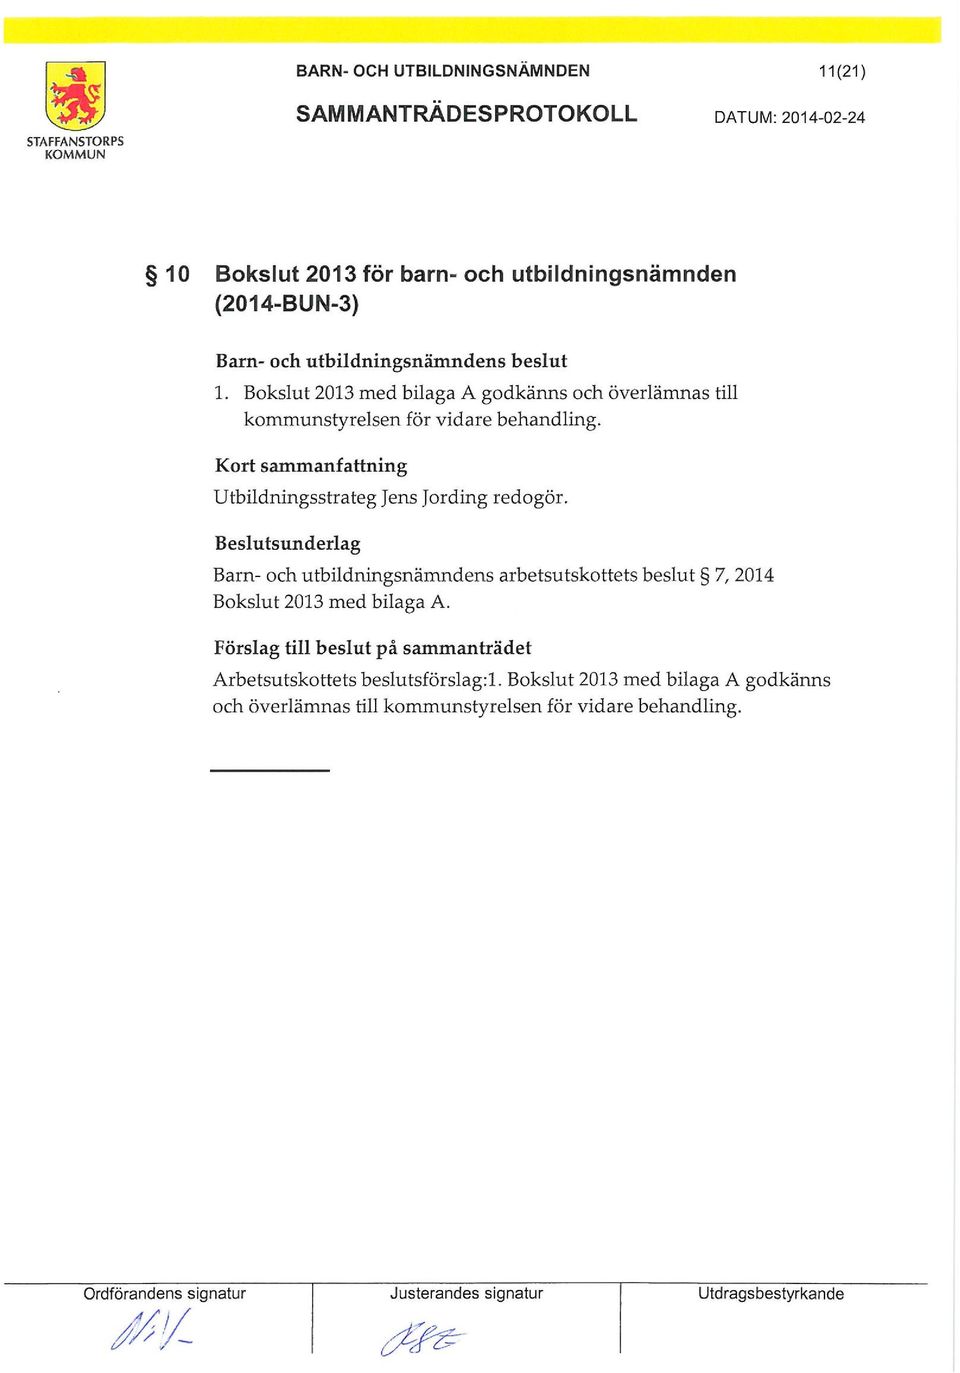 Barn- och utbildningsnändens arbetsutskottets beslut 7, 2014 Bokslut 2013 ed bilaga A.